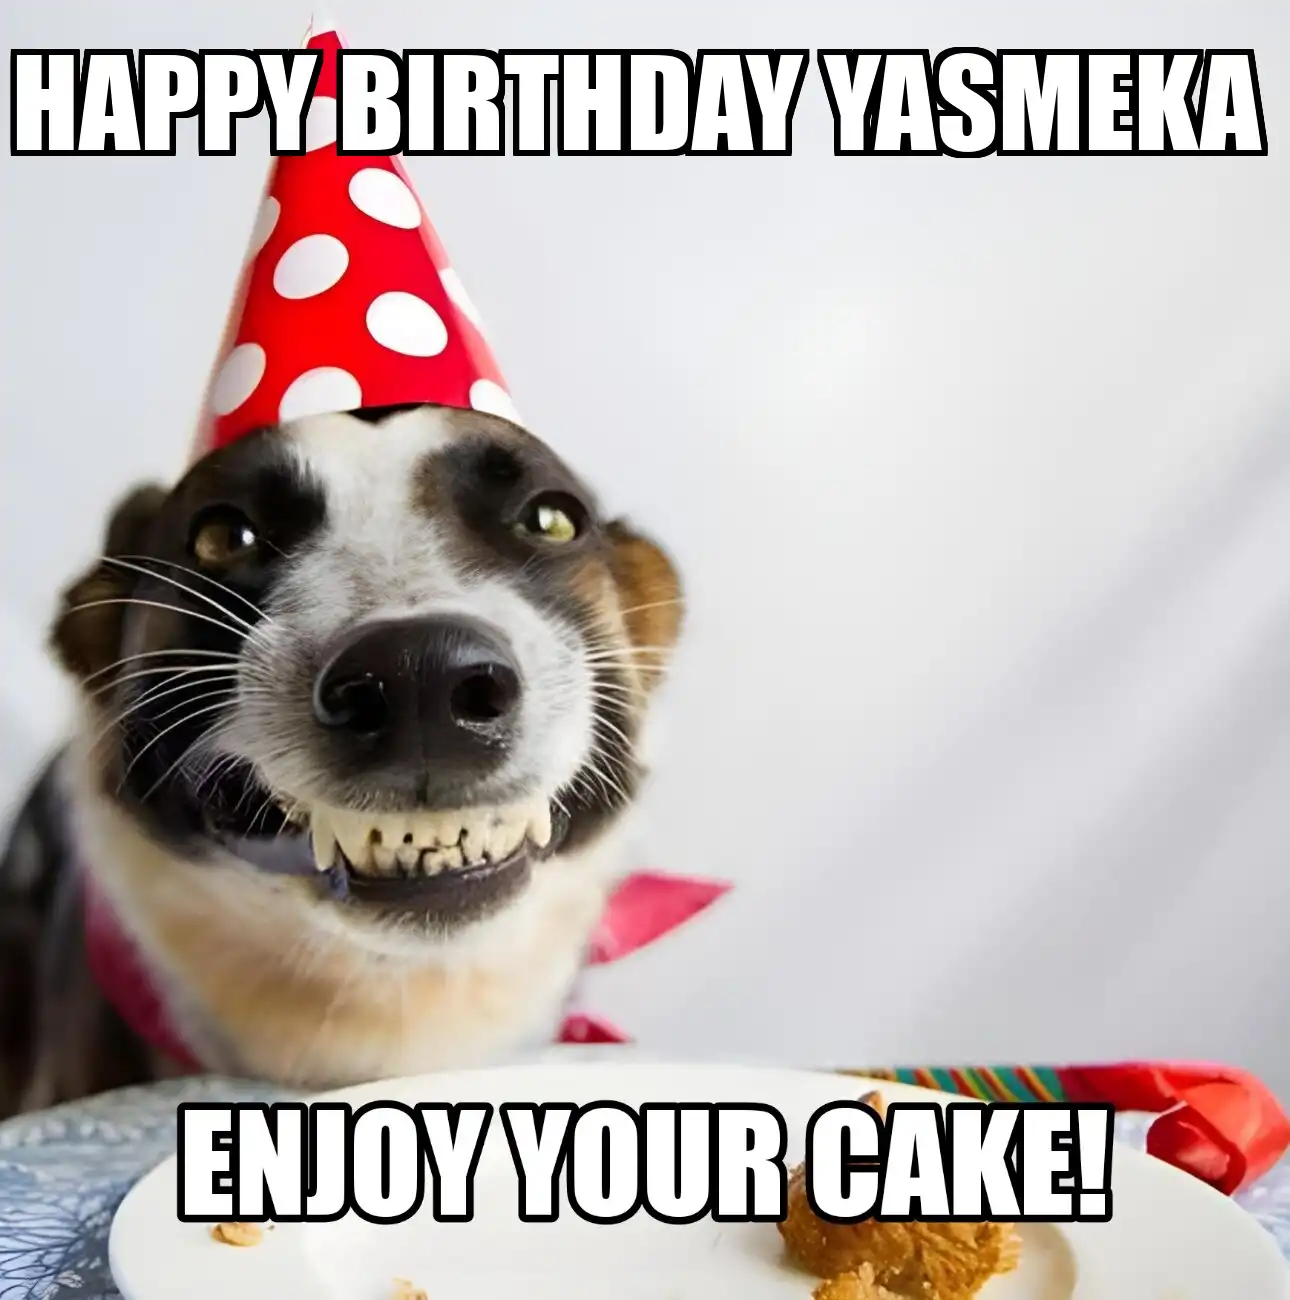 Happy Birthday Yasmeka Enjoy Your Cake Dog Meme